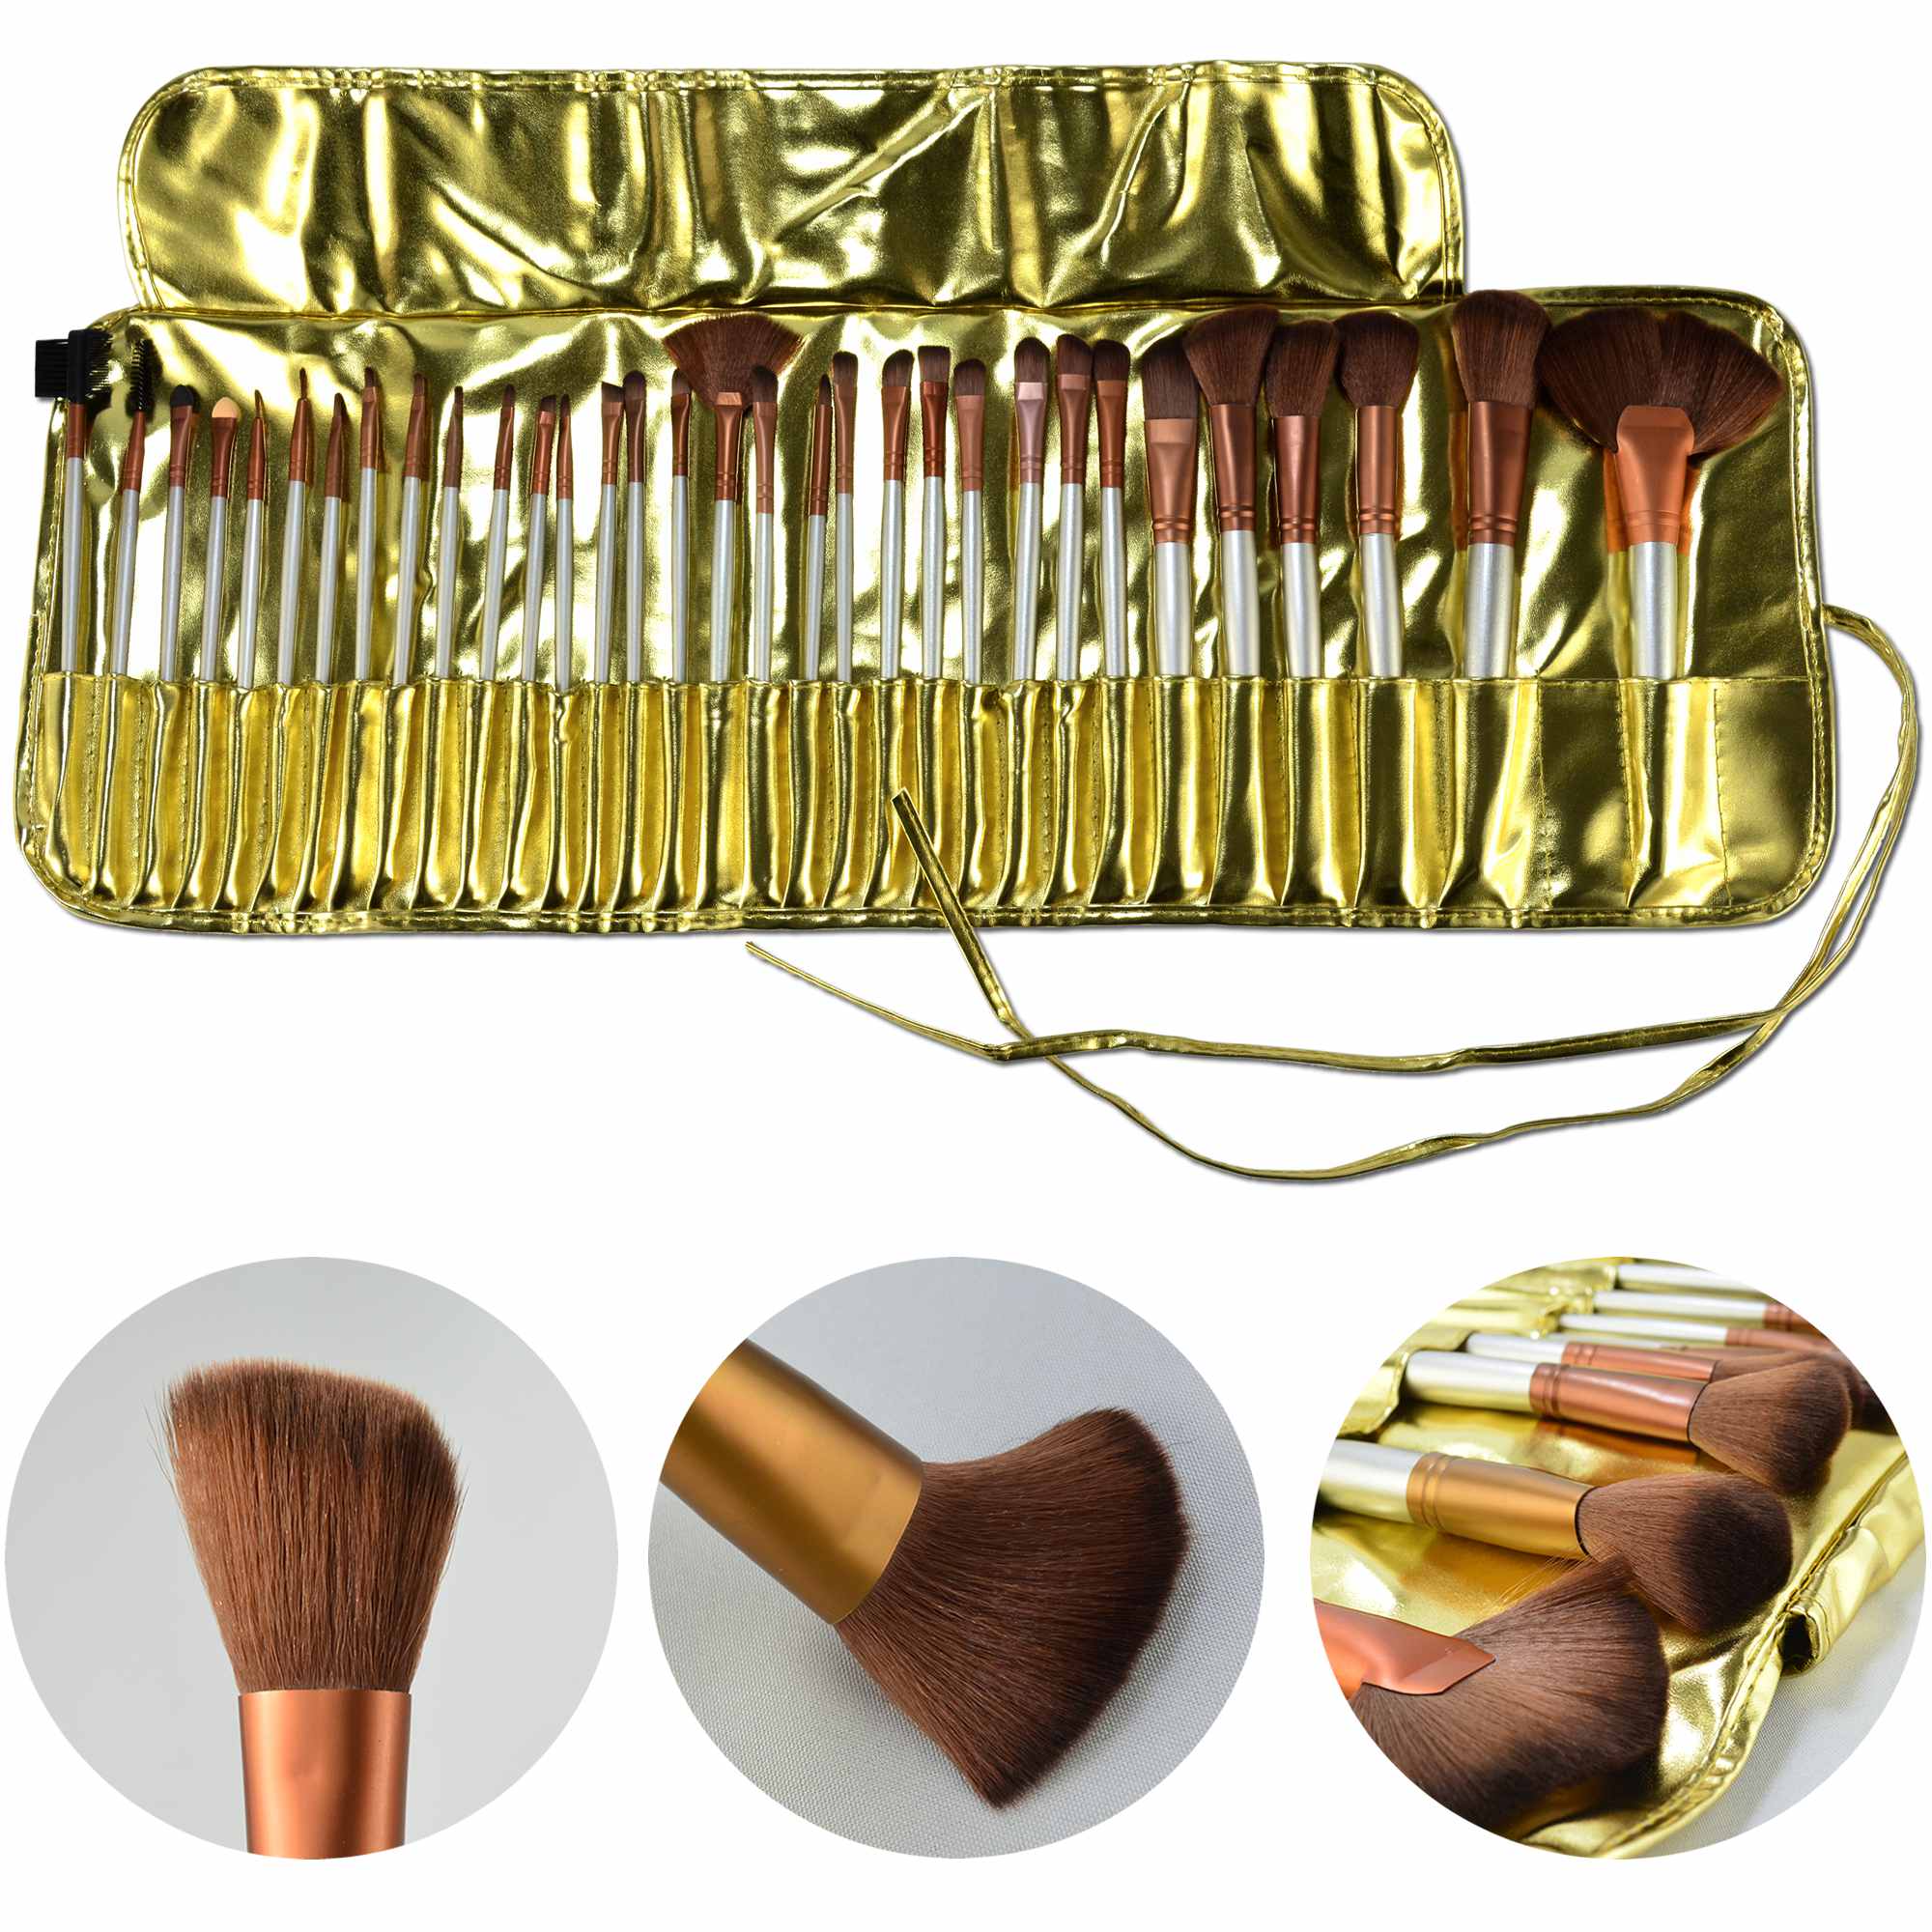 Kit de 32 Pincéis Para Maquiagem Profissional com Estojo Dourado CBRN10455